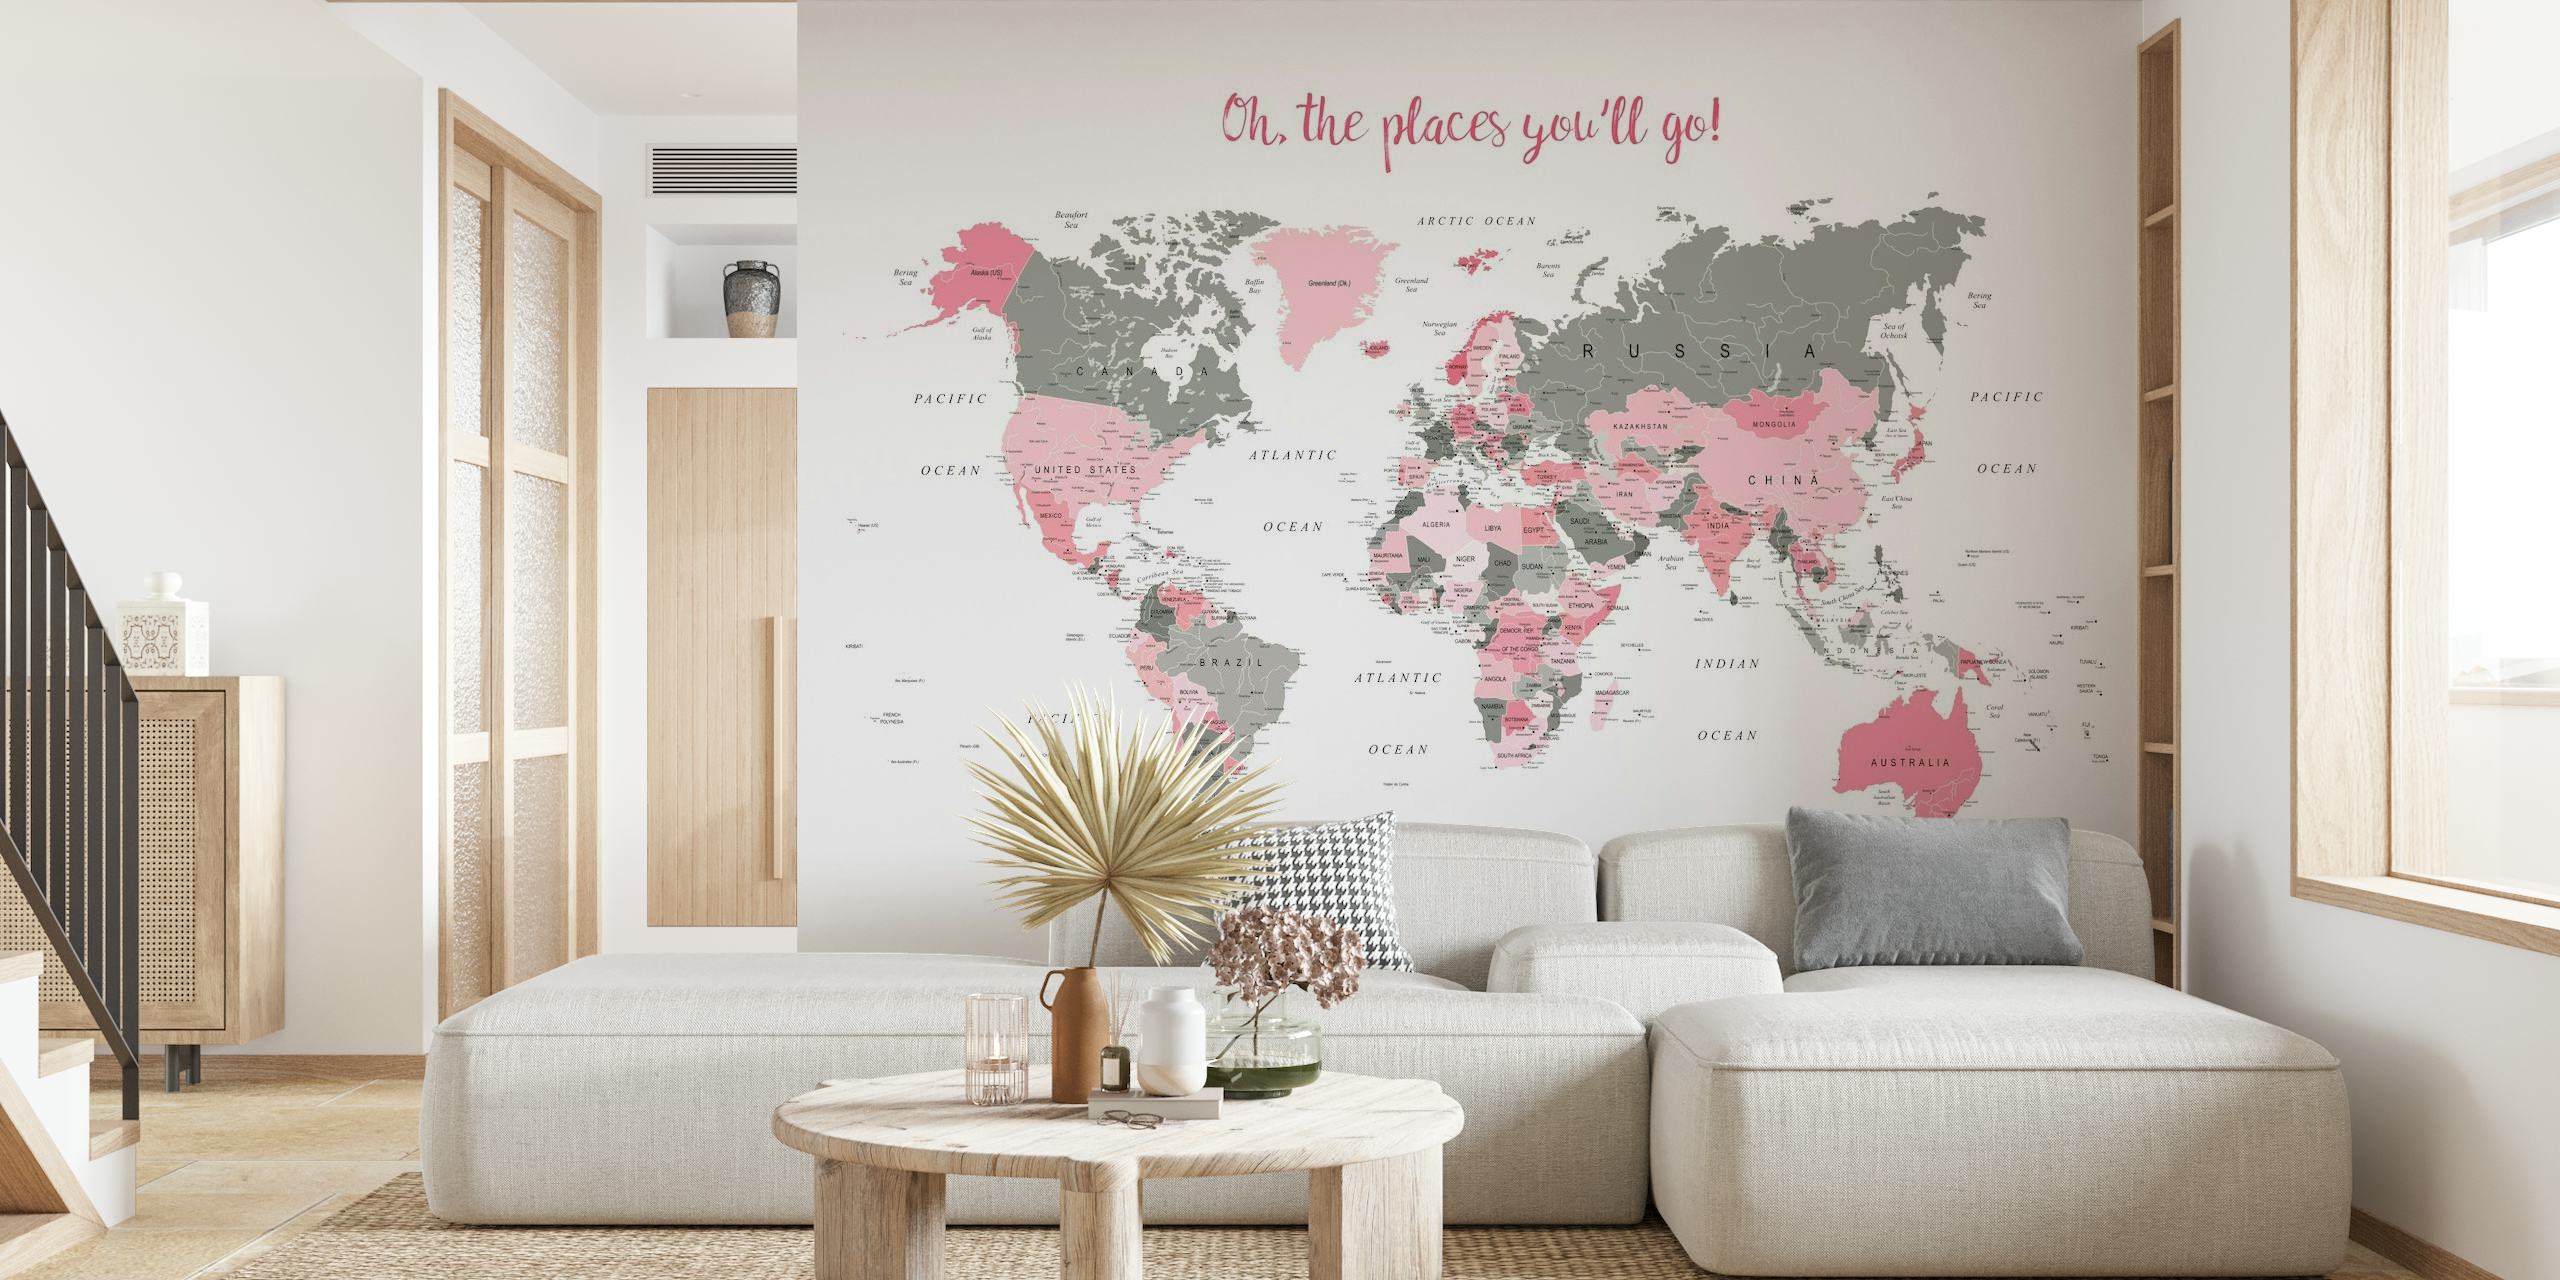 Stijlvolle wereldkaart muurschildering met roze accenten en de zin 'Oh The Places You'll Go!' voor woondecoratie.